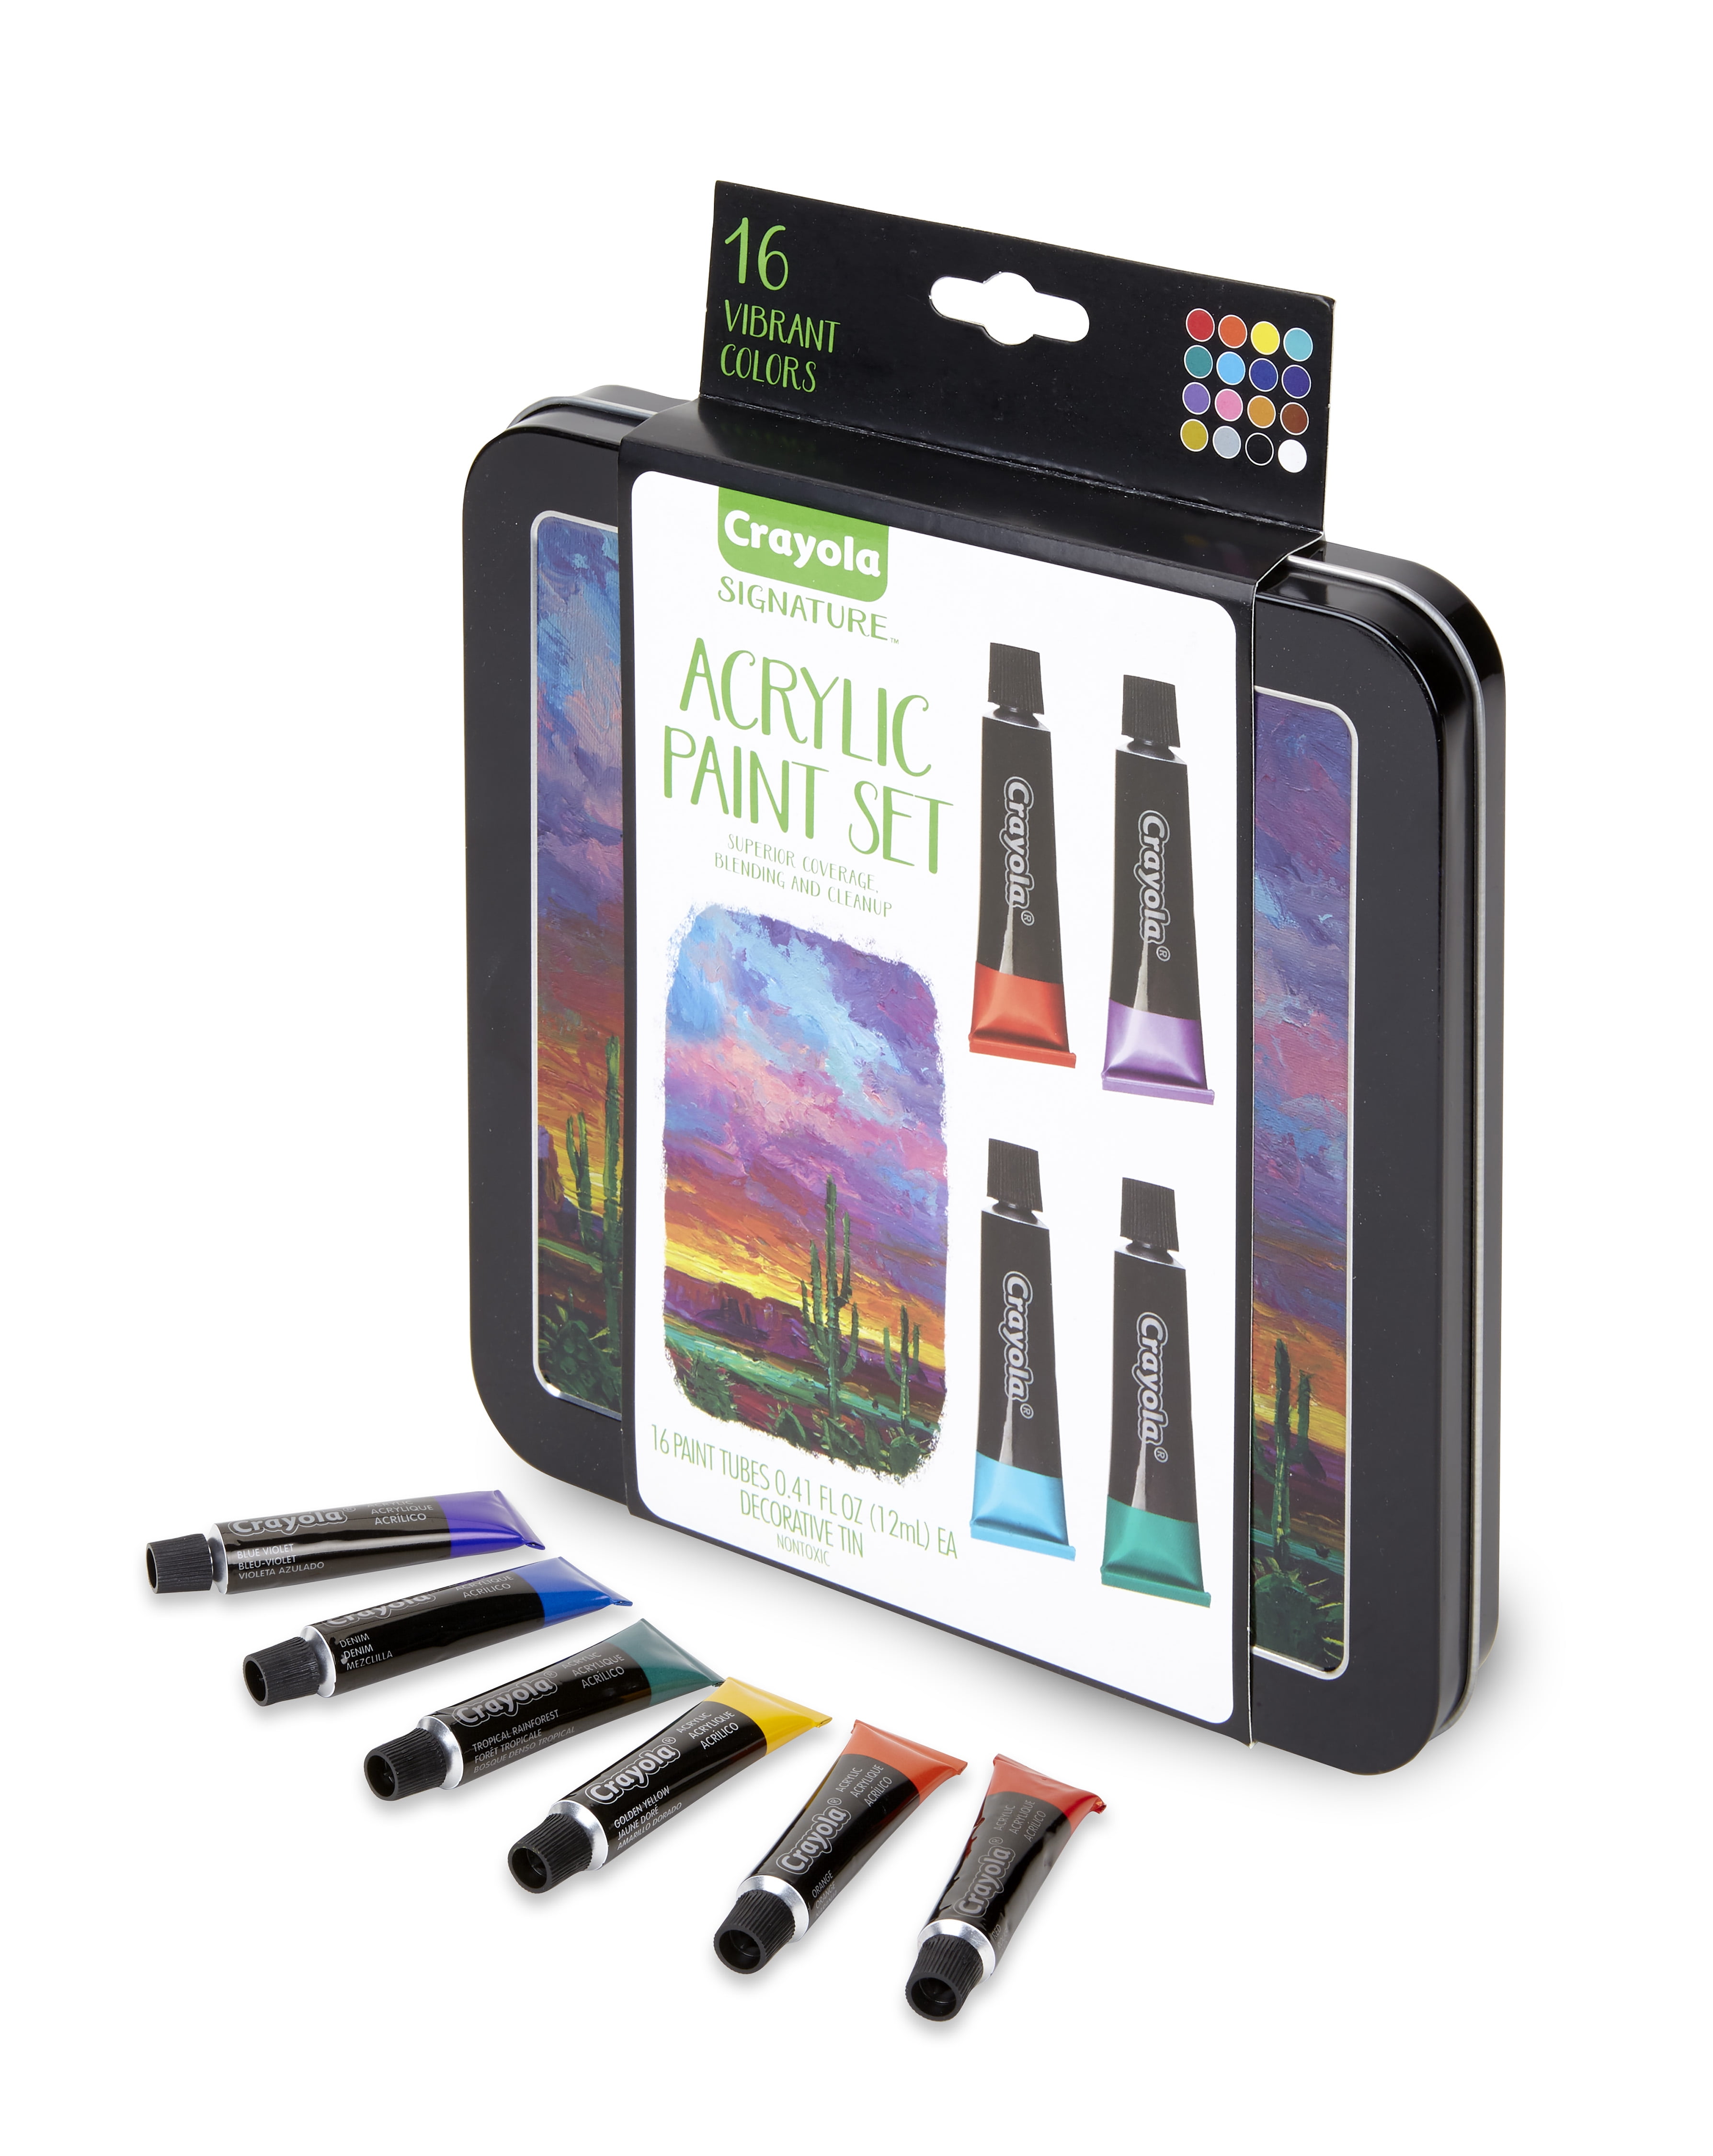 Crayola Signature DIY Gallery Designer Set, 1 ct - QFC